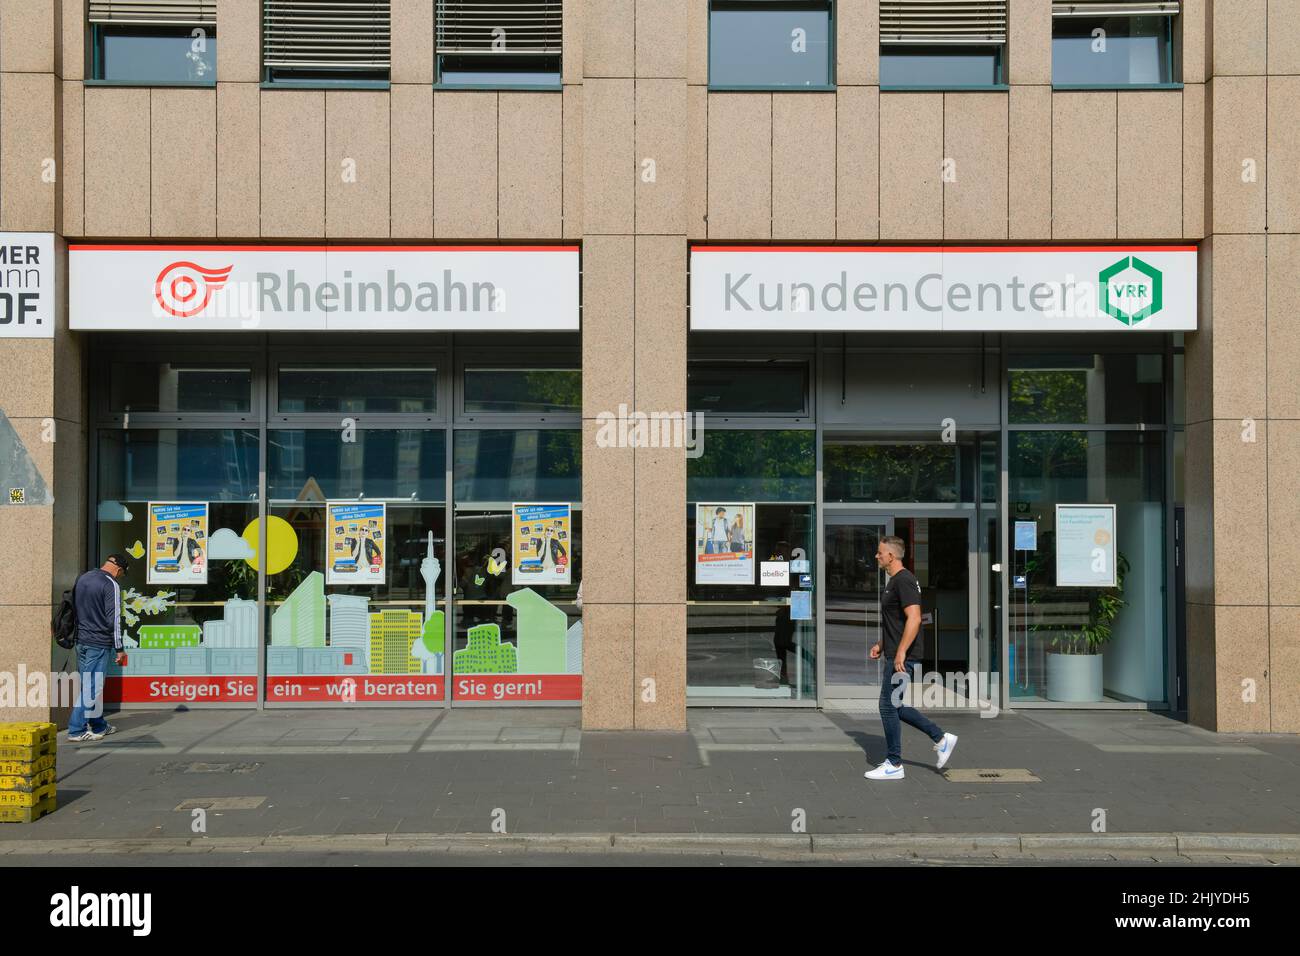 Rheinbahn Kundencenter, Konrad-Adenauer-Platz, Düsseldorf, Nordrhein-Westfalen, Deutschland Stockfoto